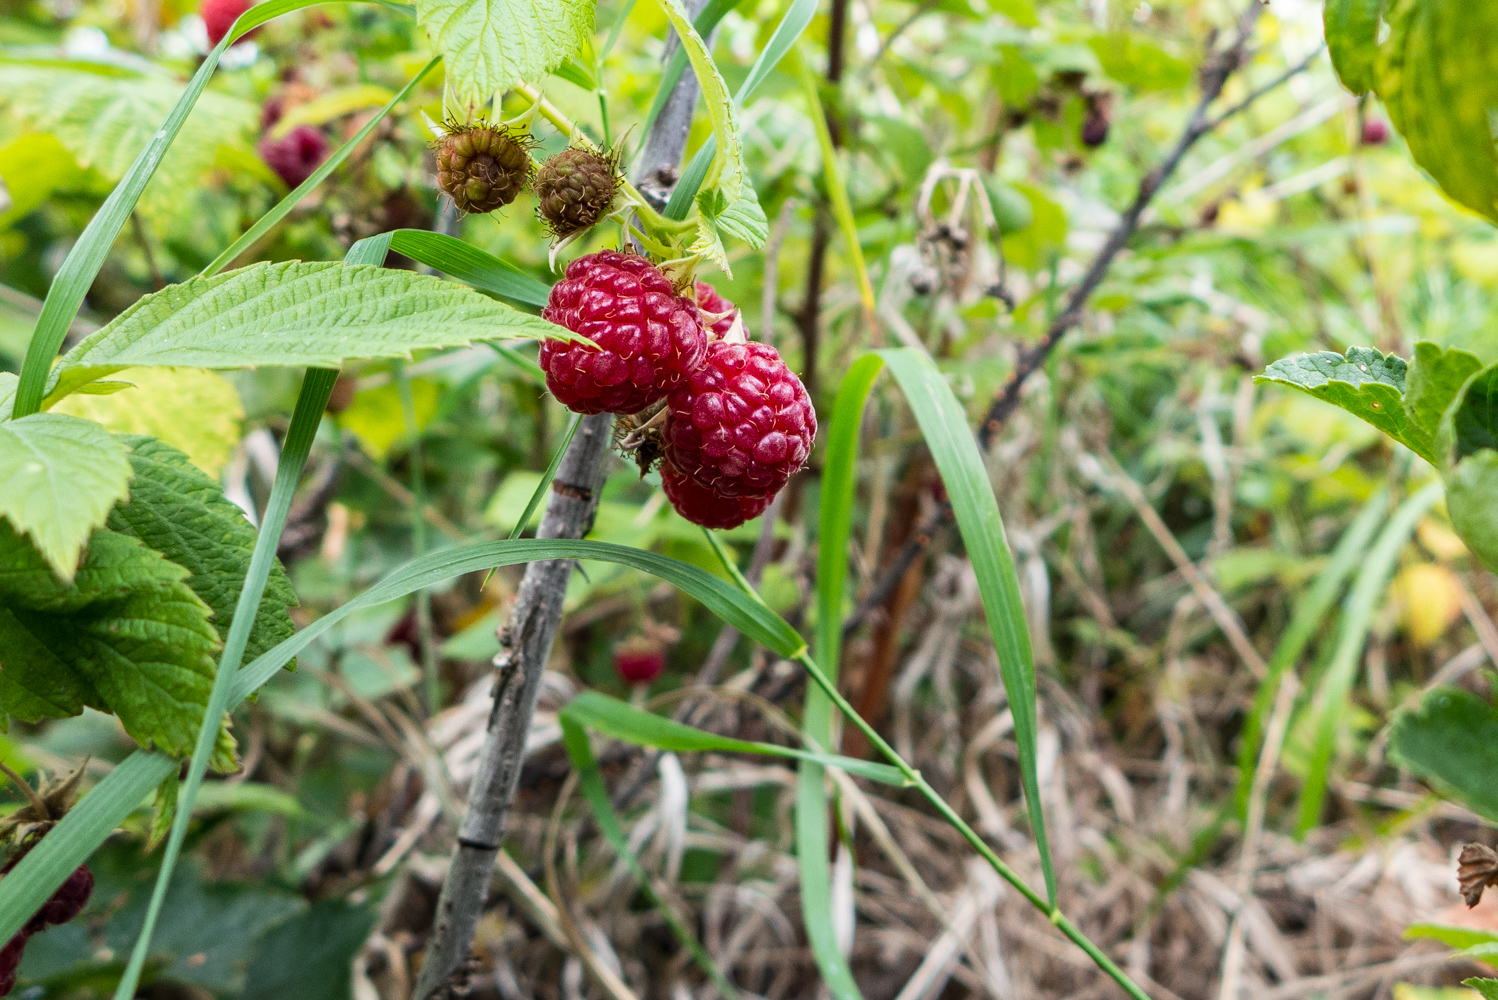  Raspberries, August 2015. 